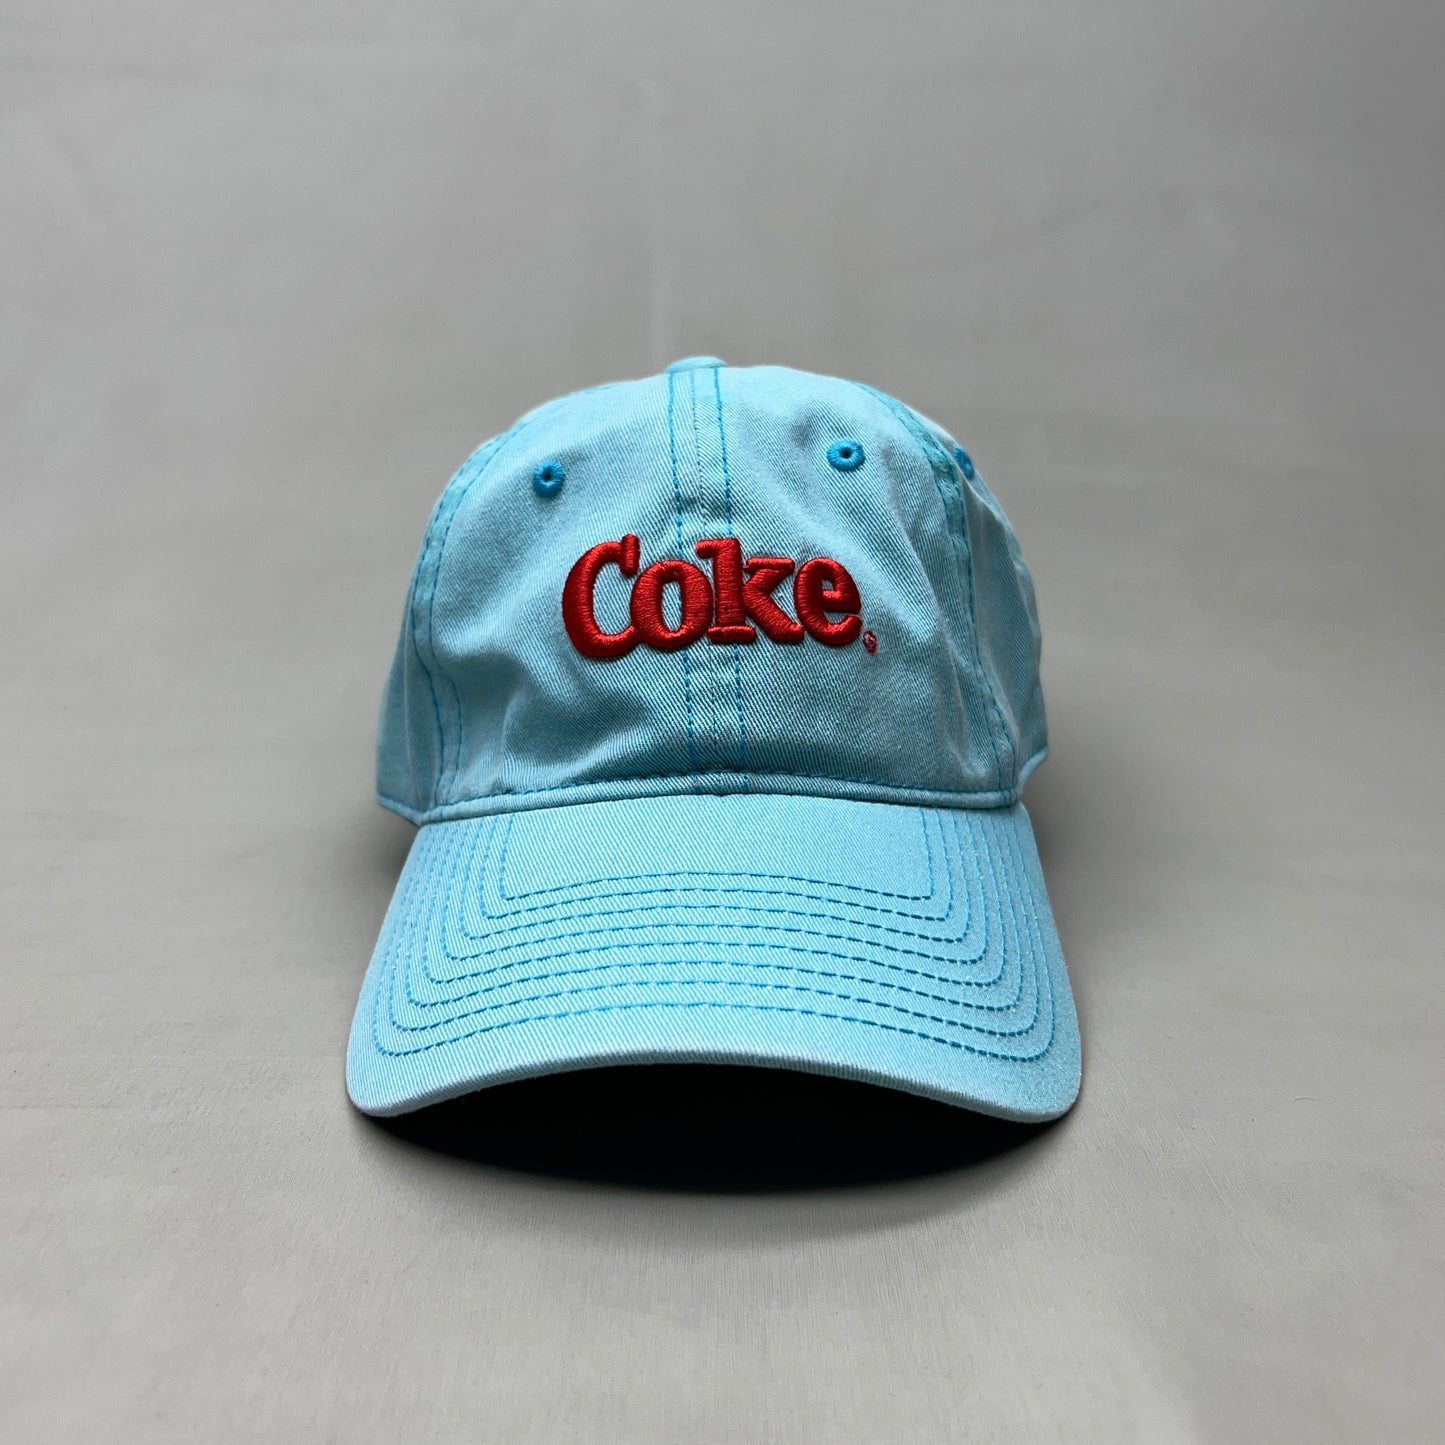 COCA-COLA Baseball Cap Strap Back Sz One Size Bright Aqua 23635 (New)